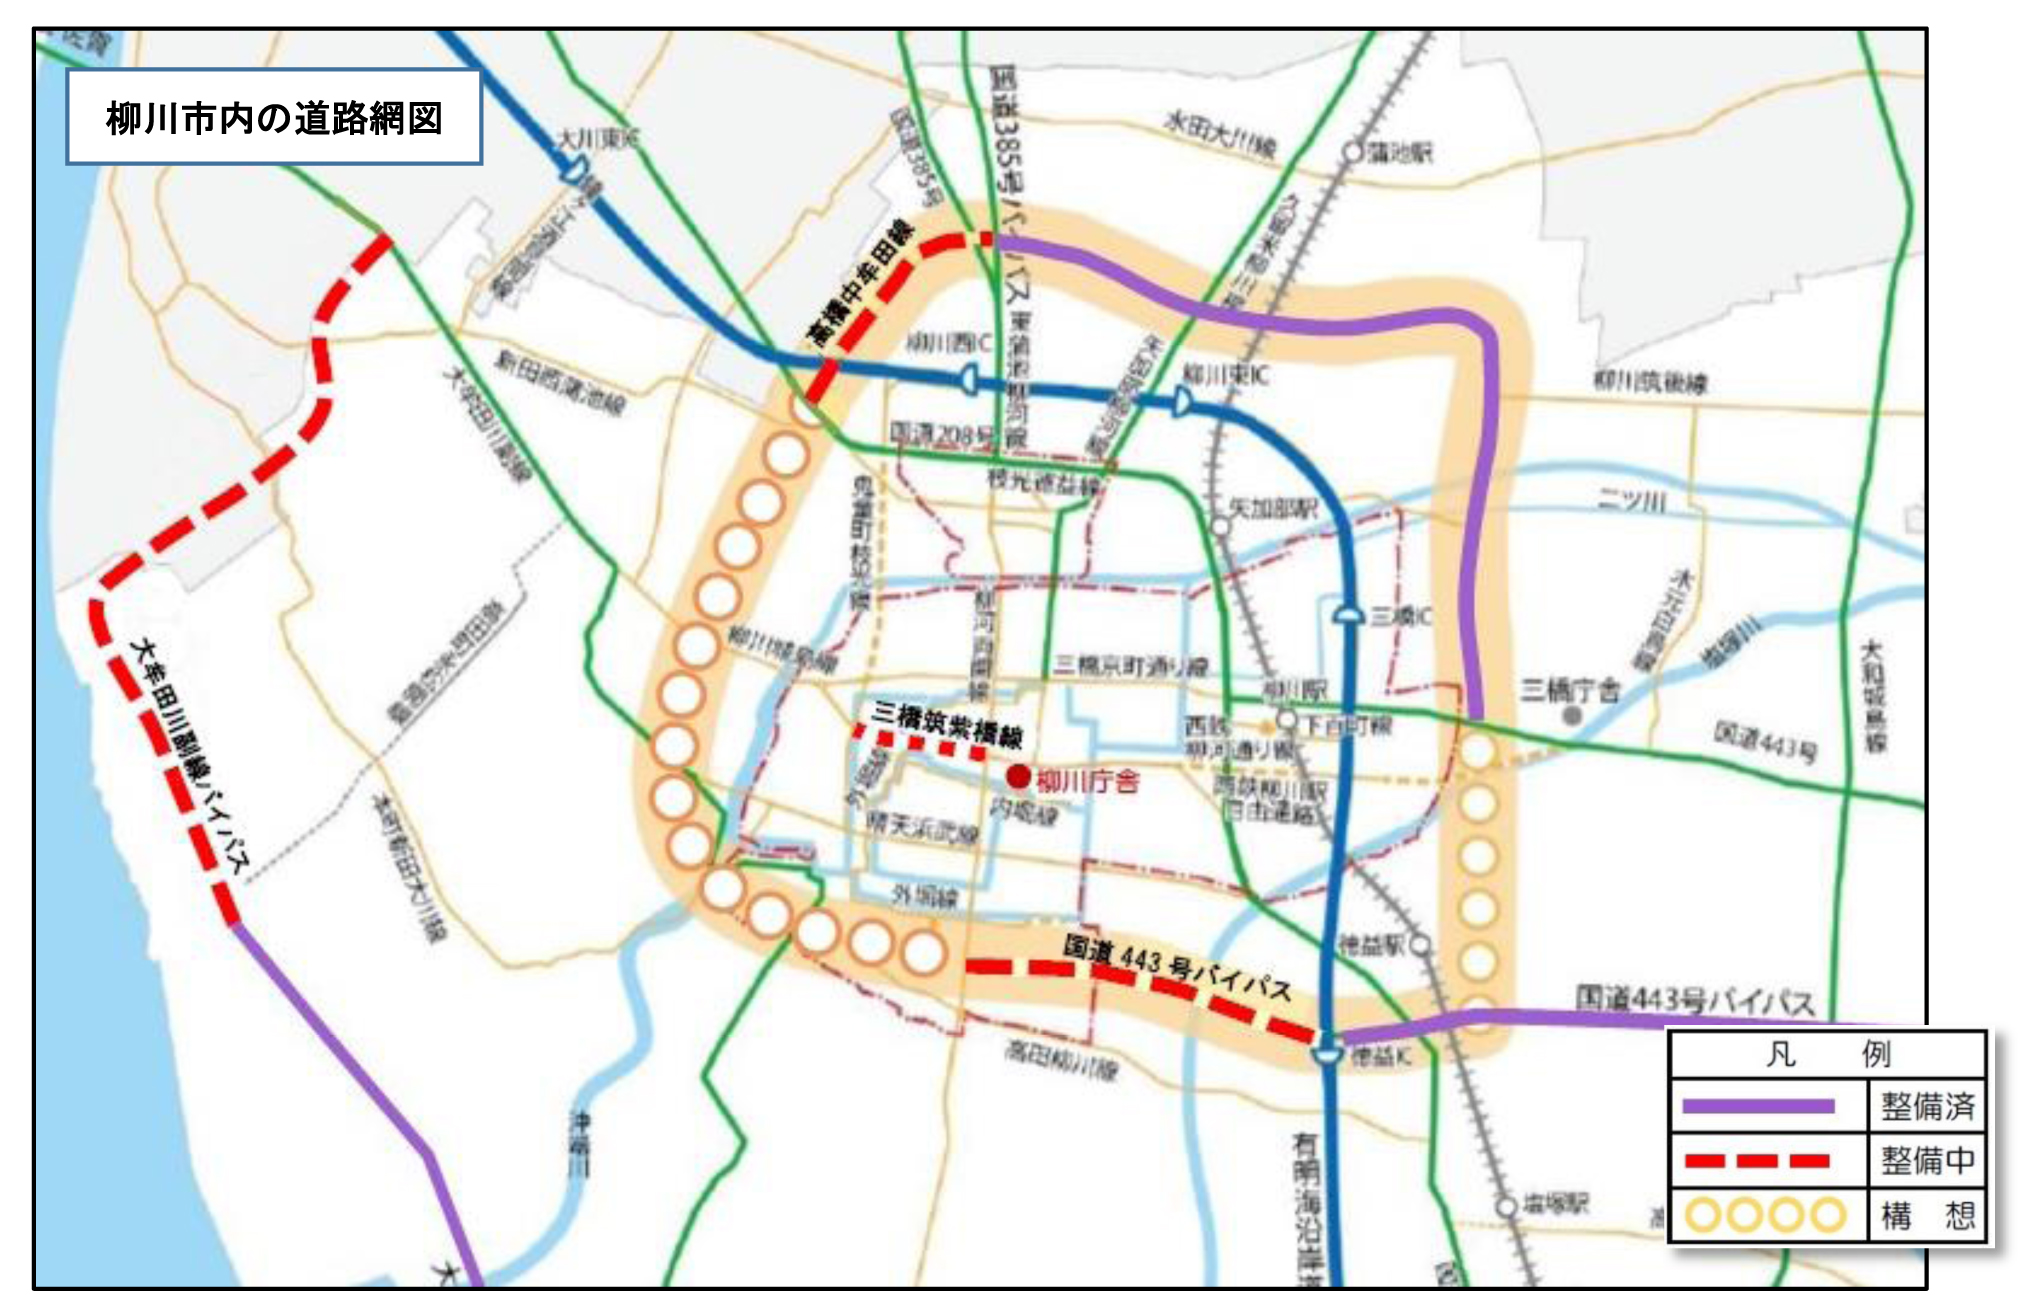 柳川市公式ウェブサイト 道路整備について